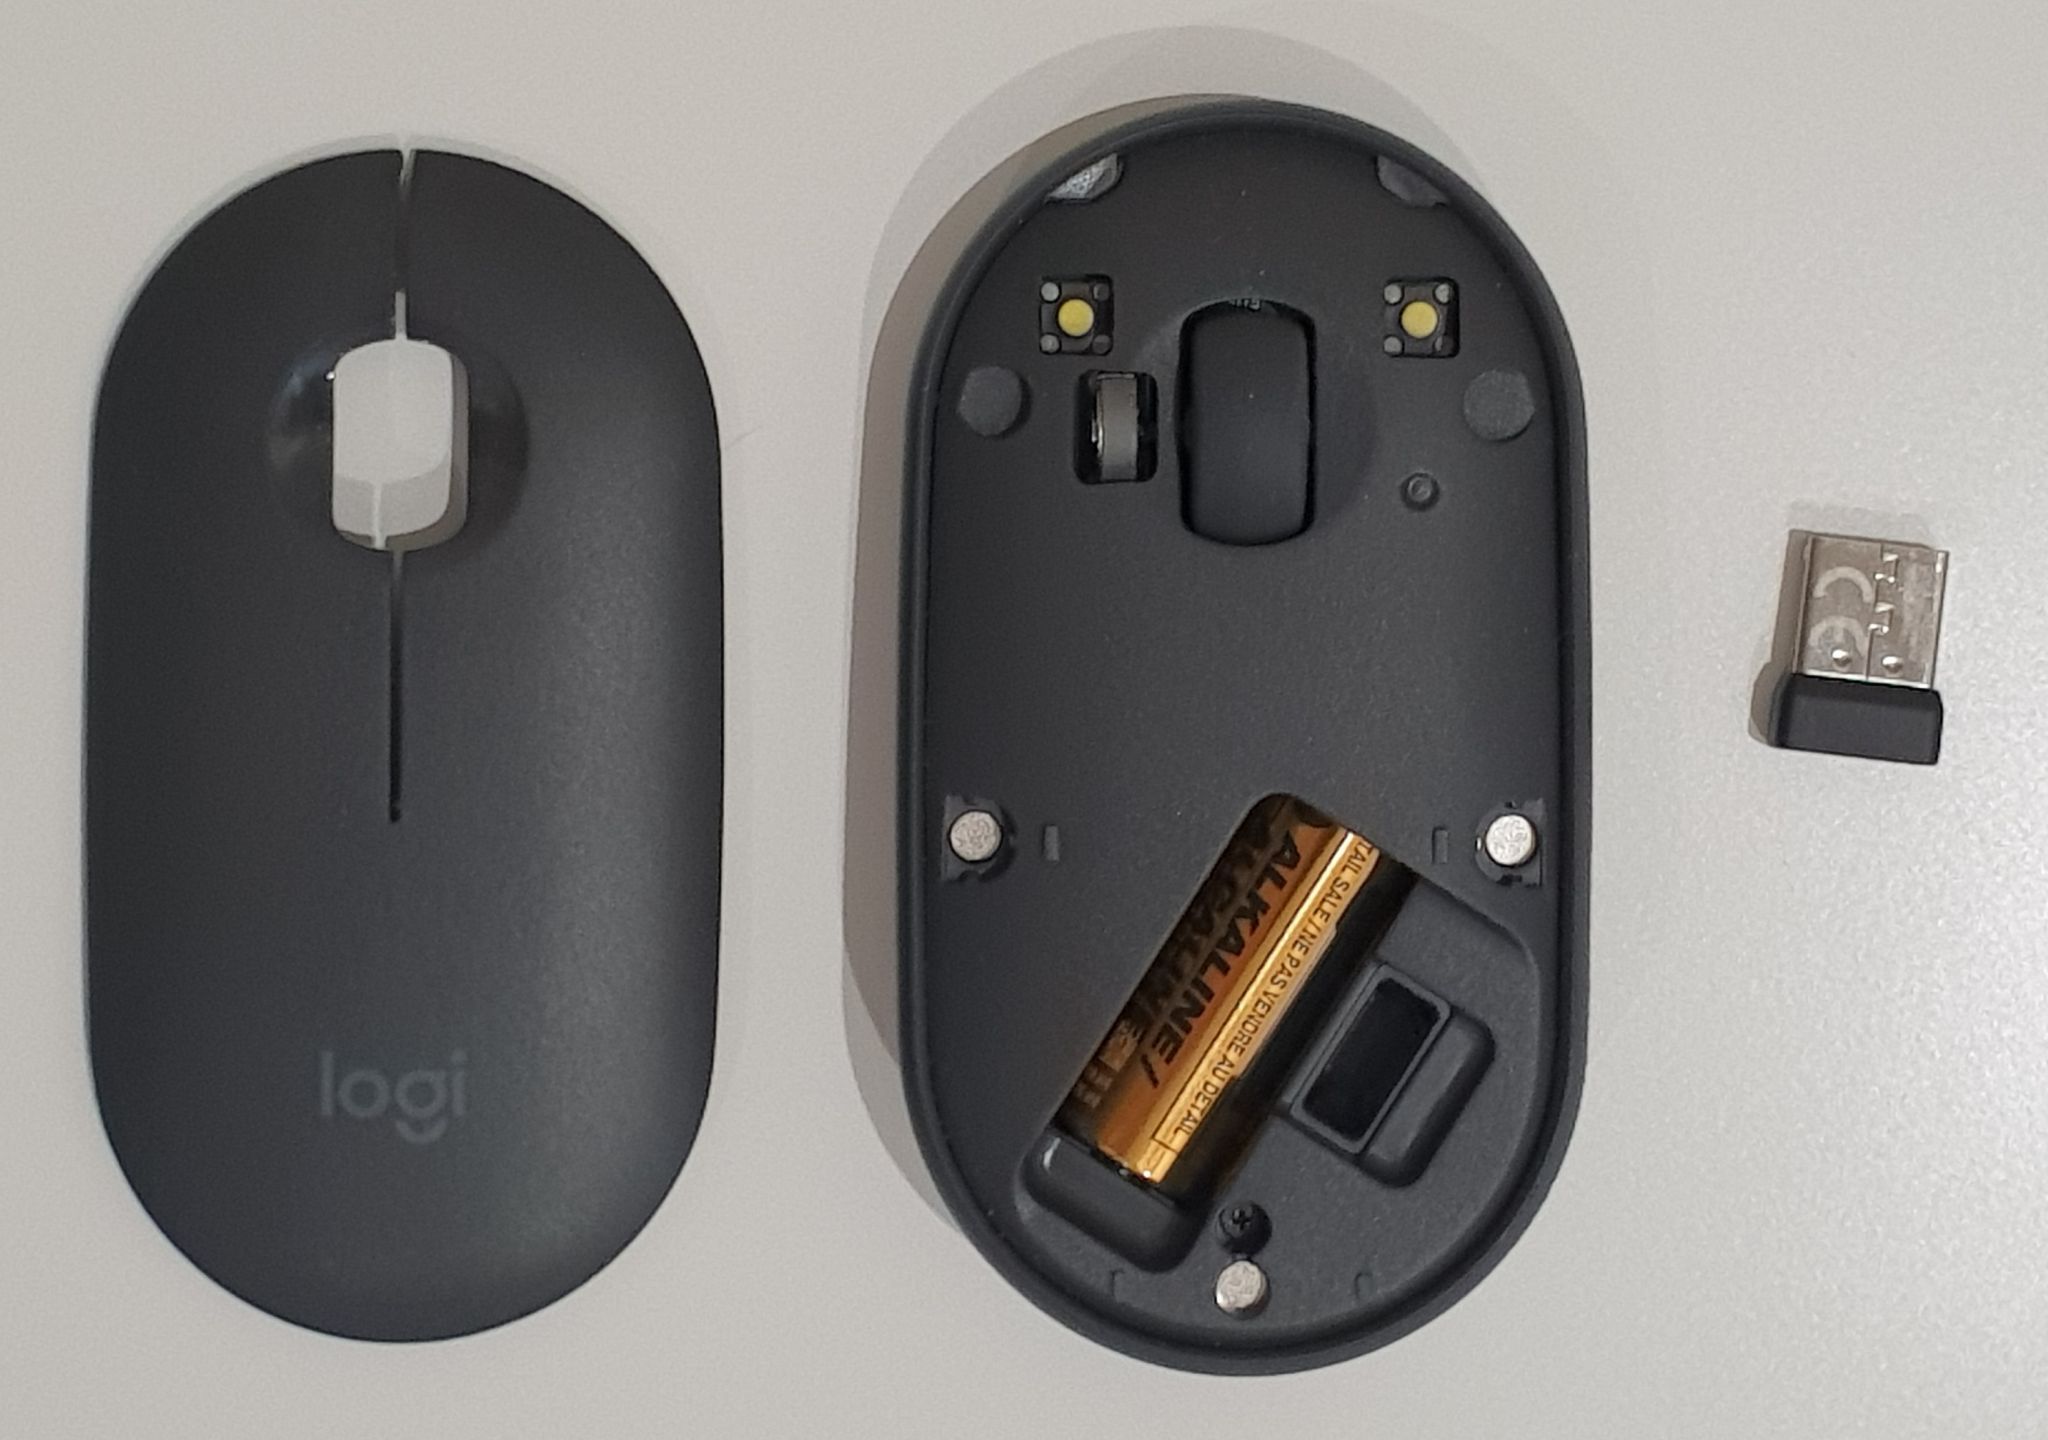 Мышь беспроводная logitech pebble. Мышка Logitech Pebble m350. Logitech Pebble m350. Logitech Pebble m350 Wireless Mouse Graphite. Мышь Logitech Pebble m350, оптическая, беспроводная, USB, графитовый [910-005718].